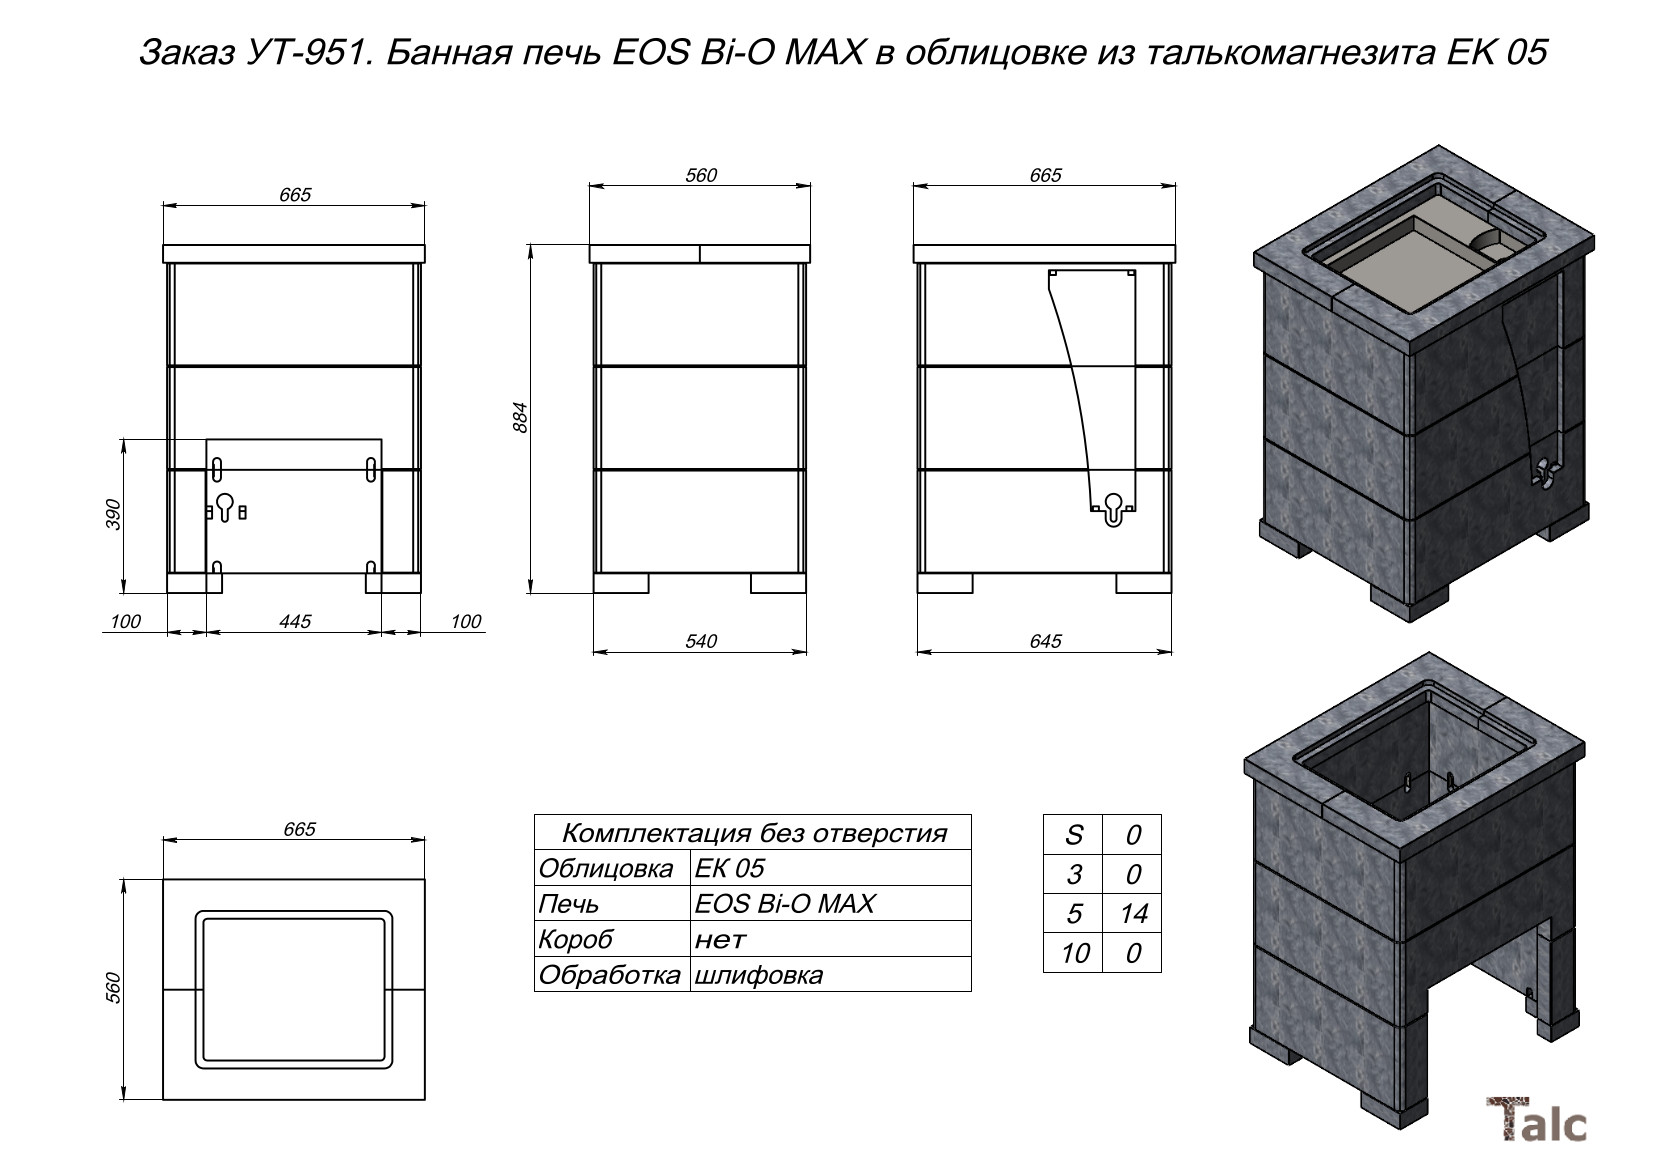 Банная печь EOS Bi-O MAX в облицовке из талькомагнезита EK 05 